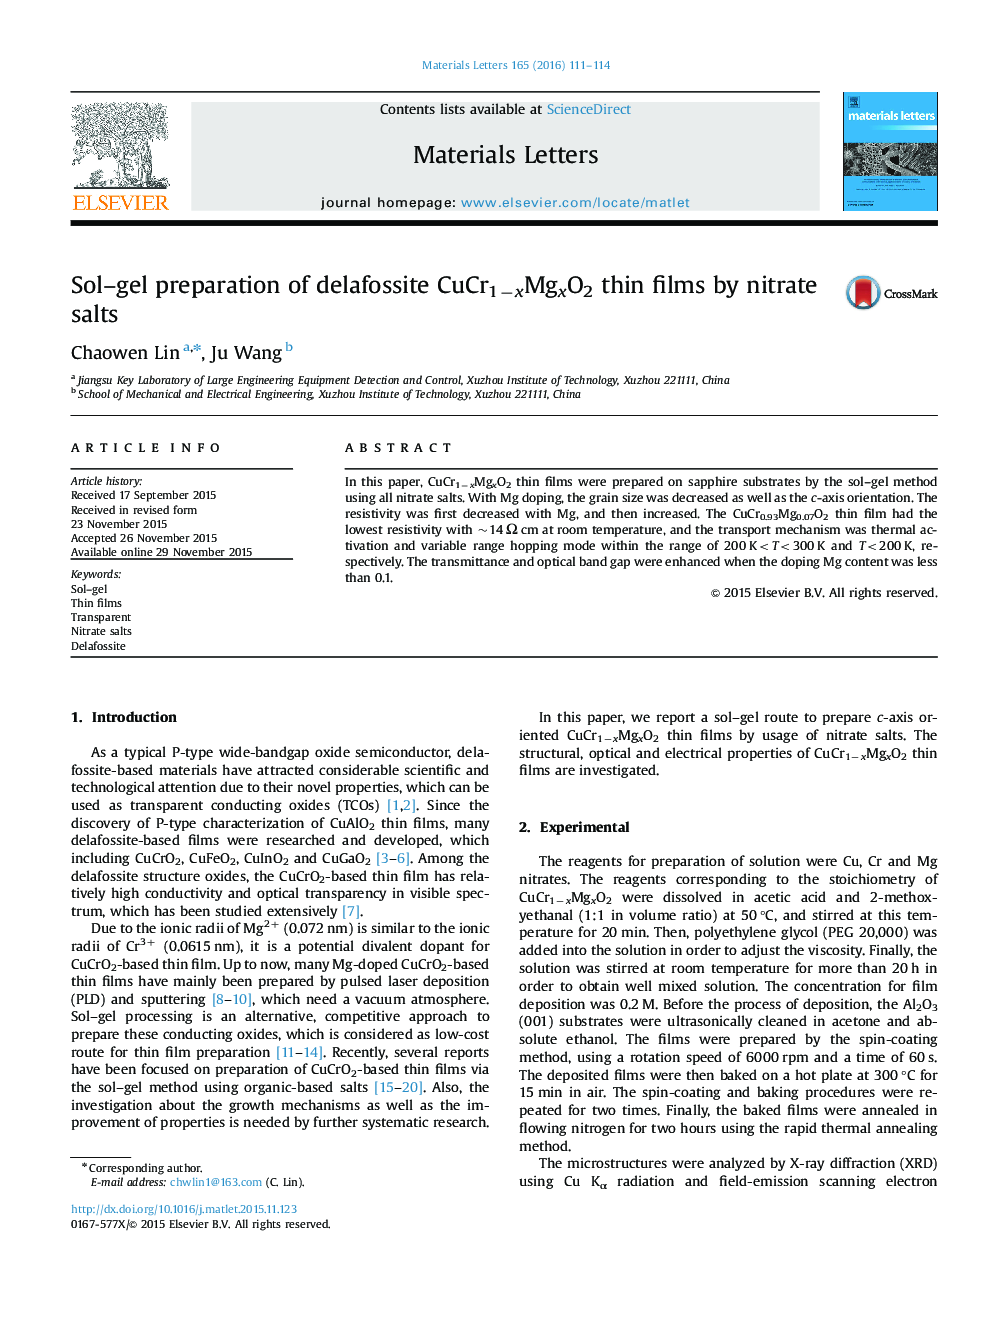 Sol-gel preparation of delafossite CuCr1âxMgxO2 thin films by nitrate salts